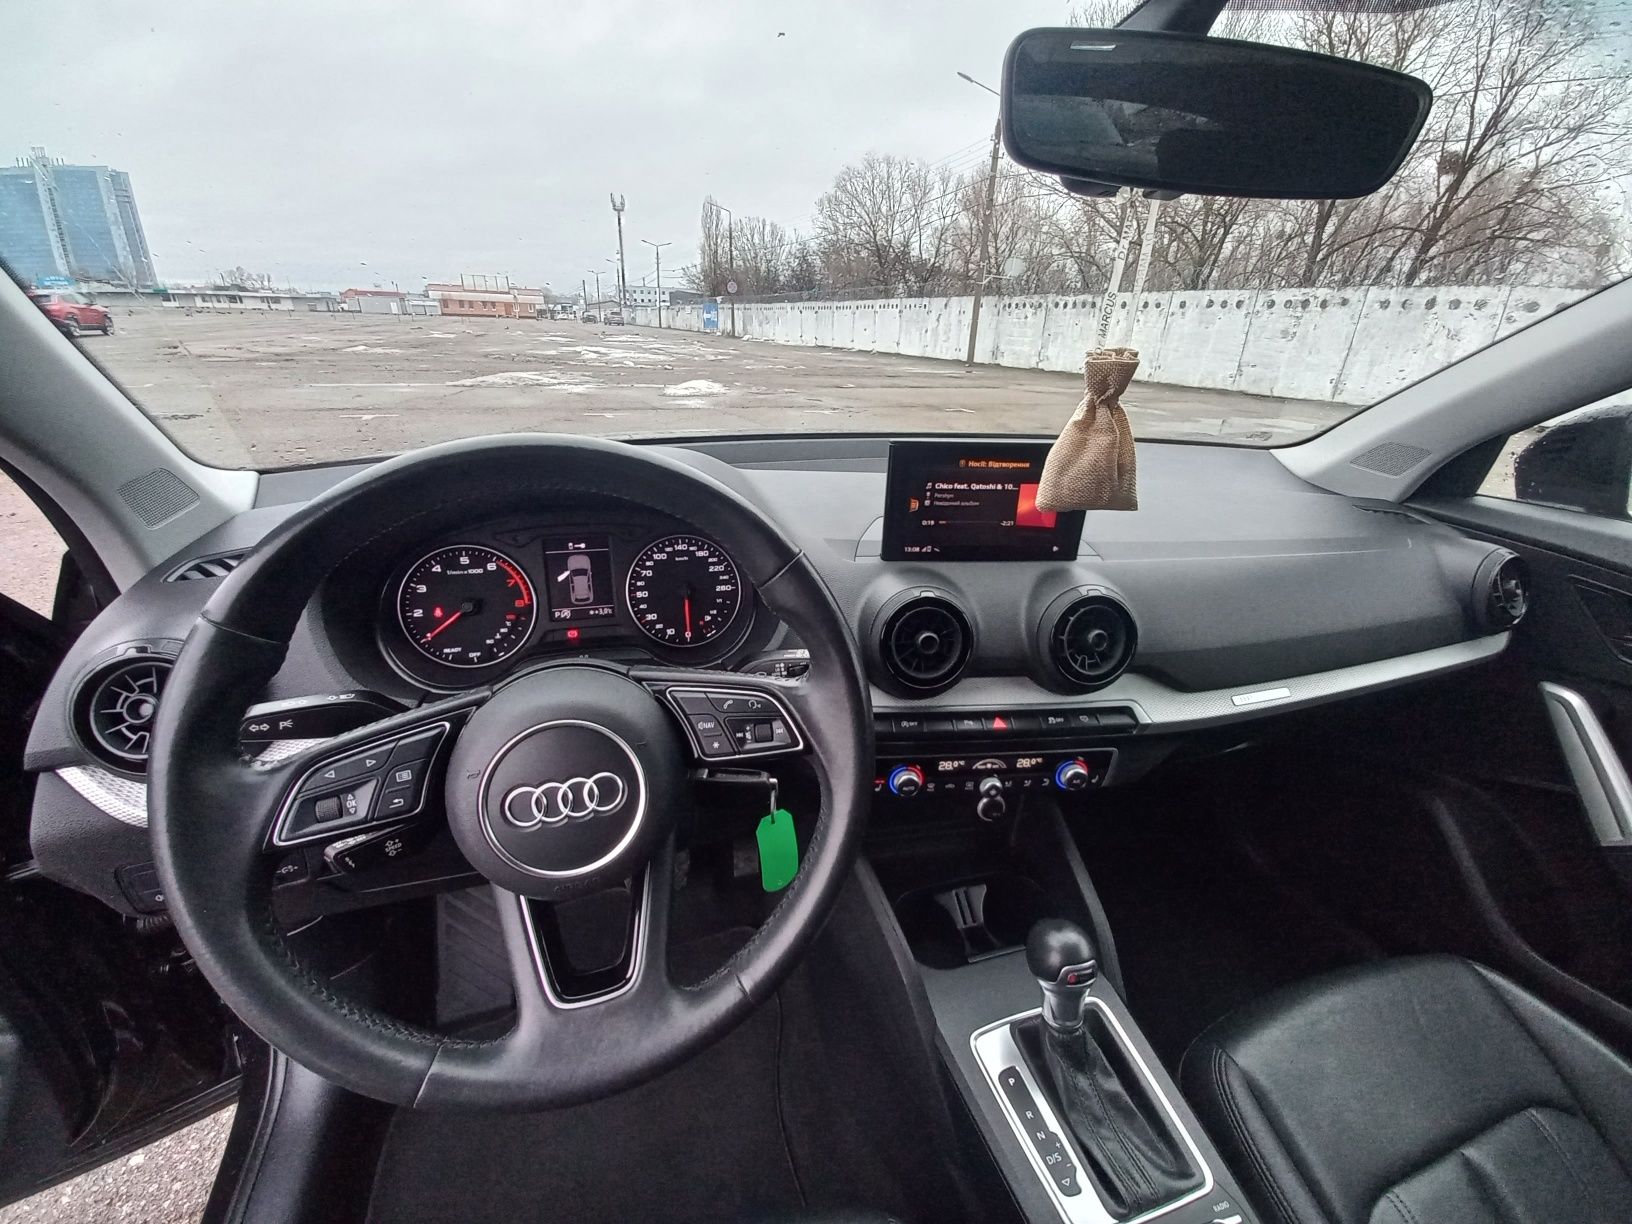 Audi Q2 2019 З Бельгії